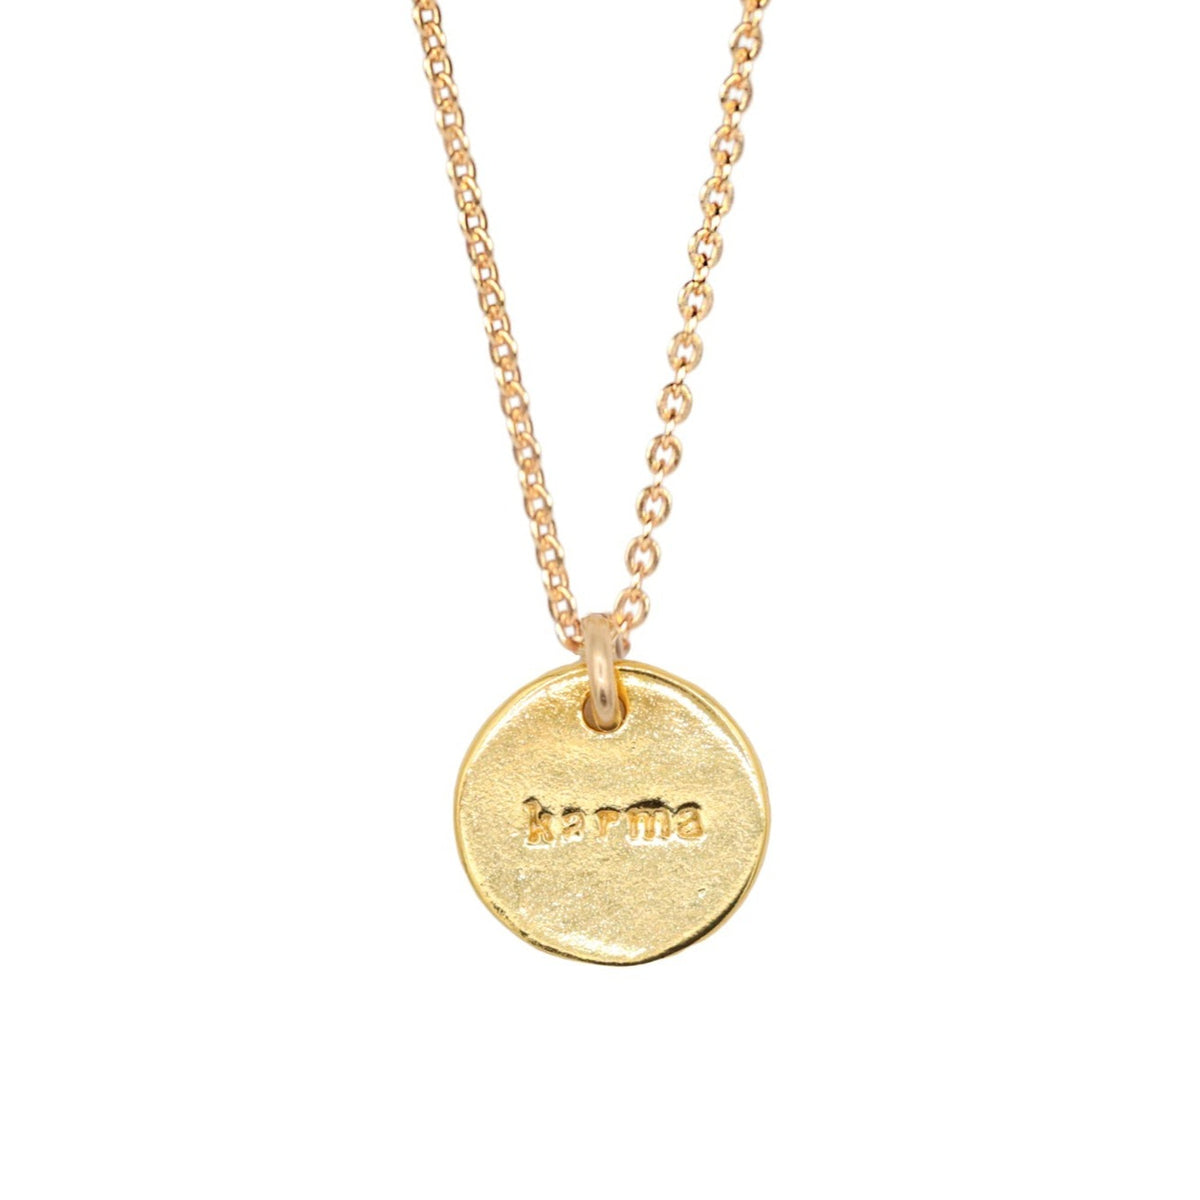 Karma Necklace - 14K gold filled + gold vermeil